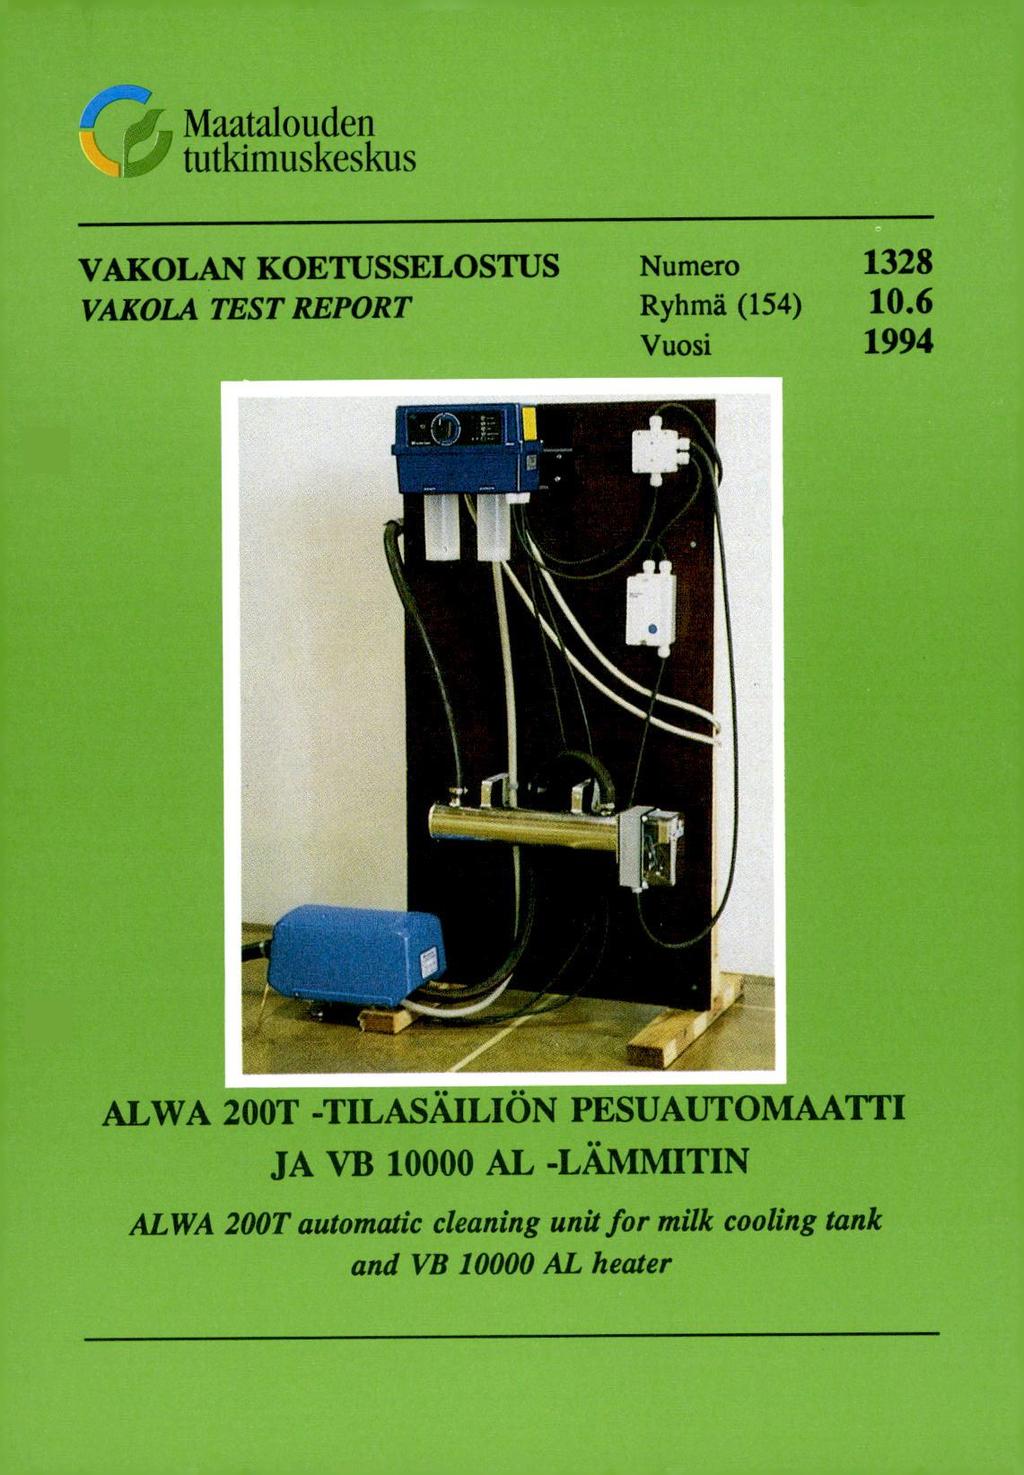 Maatalouden tutkimuskeskus VAKOLAN KOETUSSELOSTUS Numero 1328 VAKOLA TEST REPORT Ryhmä (154) 10.